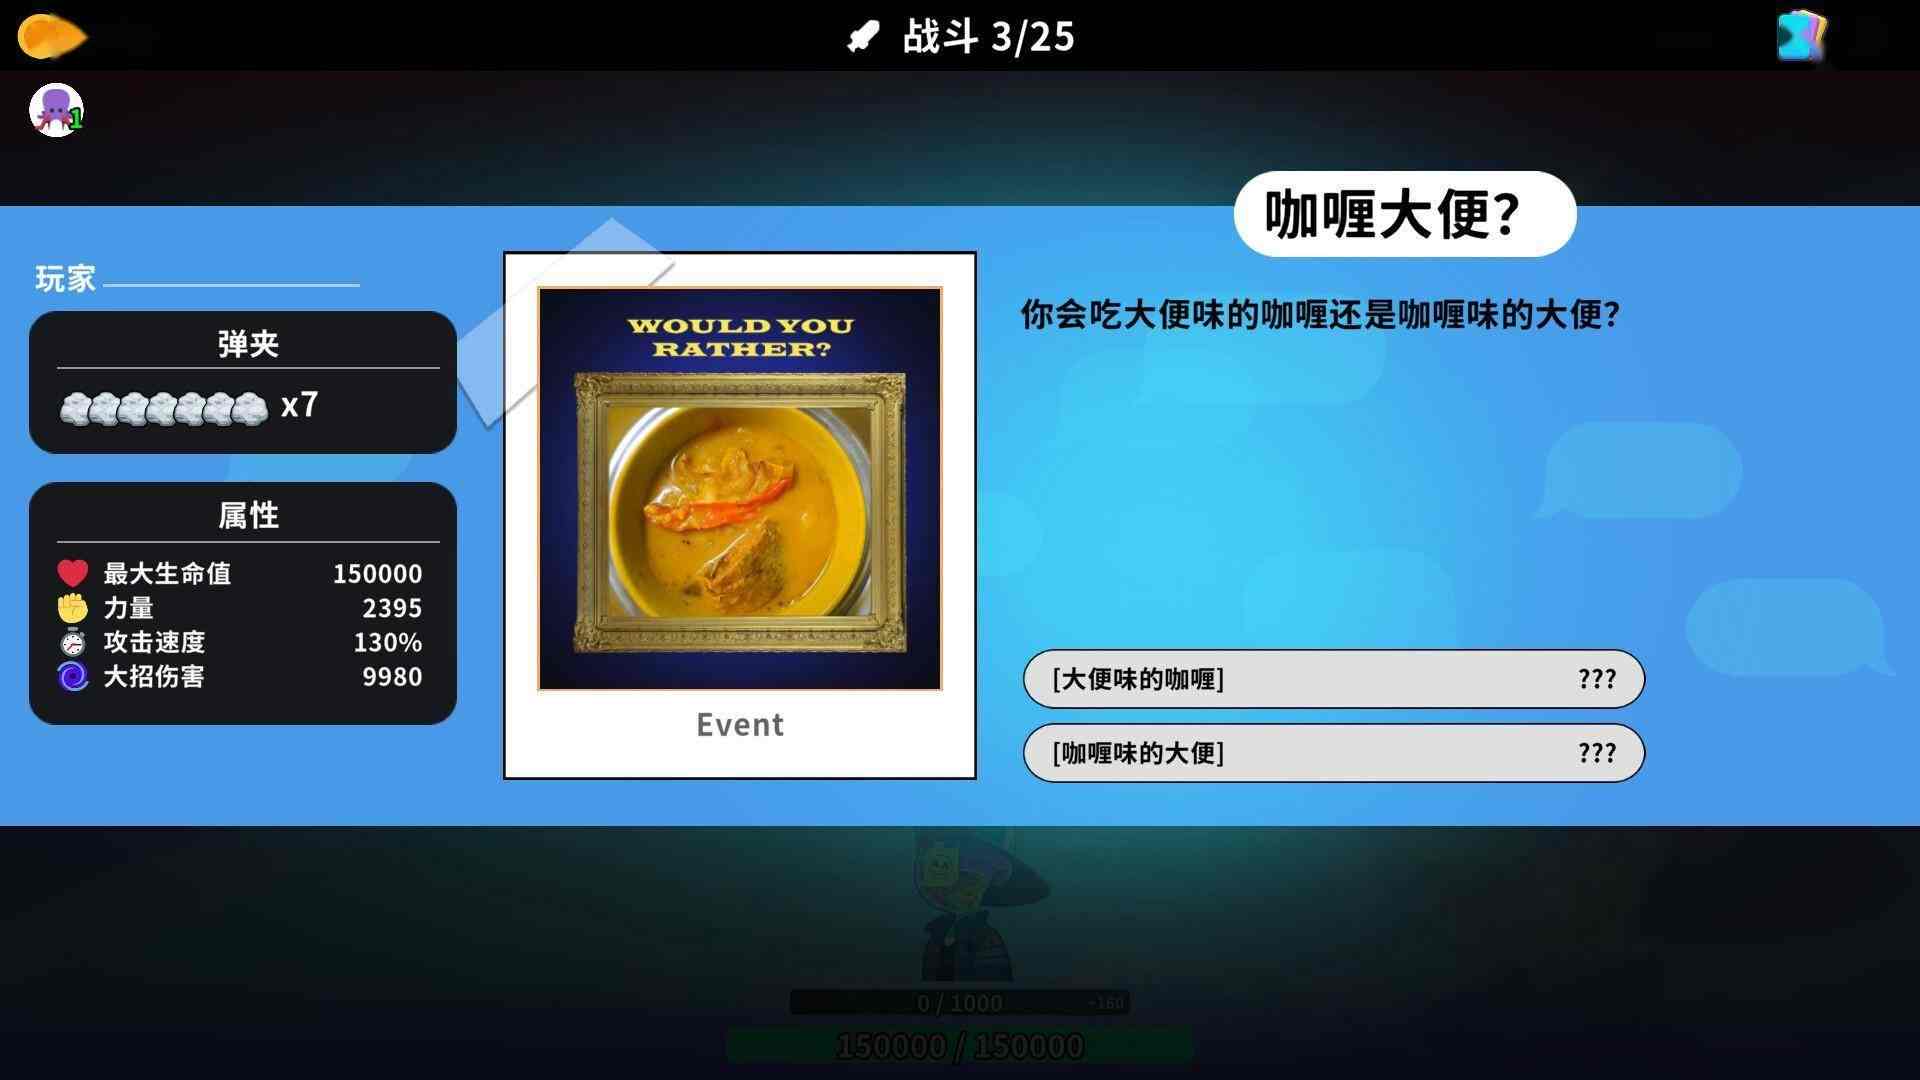 中文互联网梗大杂烩恶搞游戏《超级键盘侠》现已推出试玩Demo